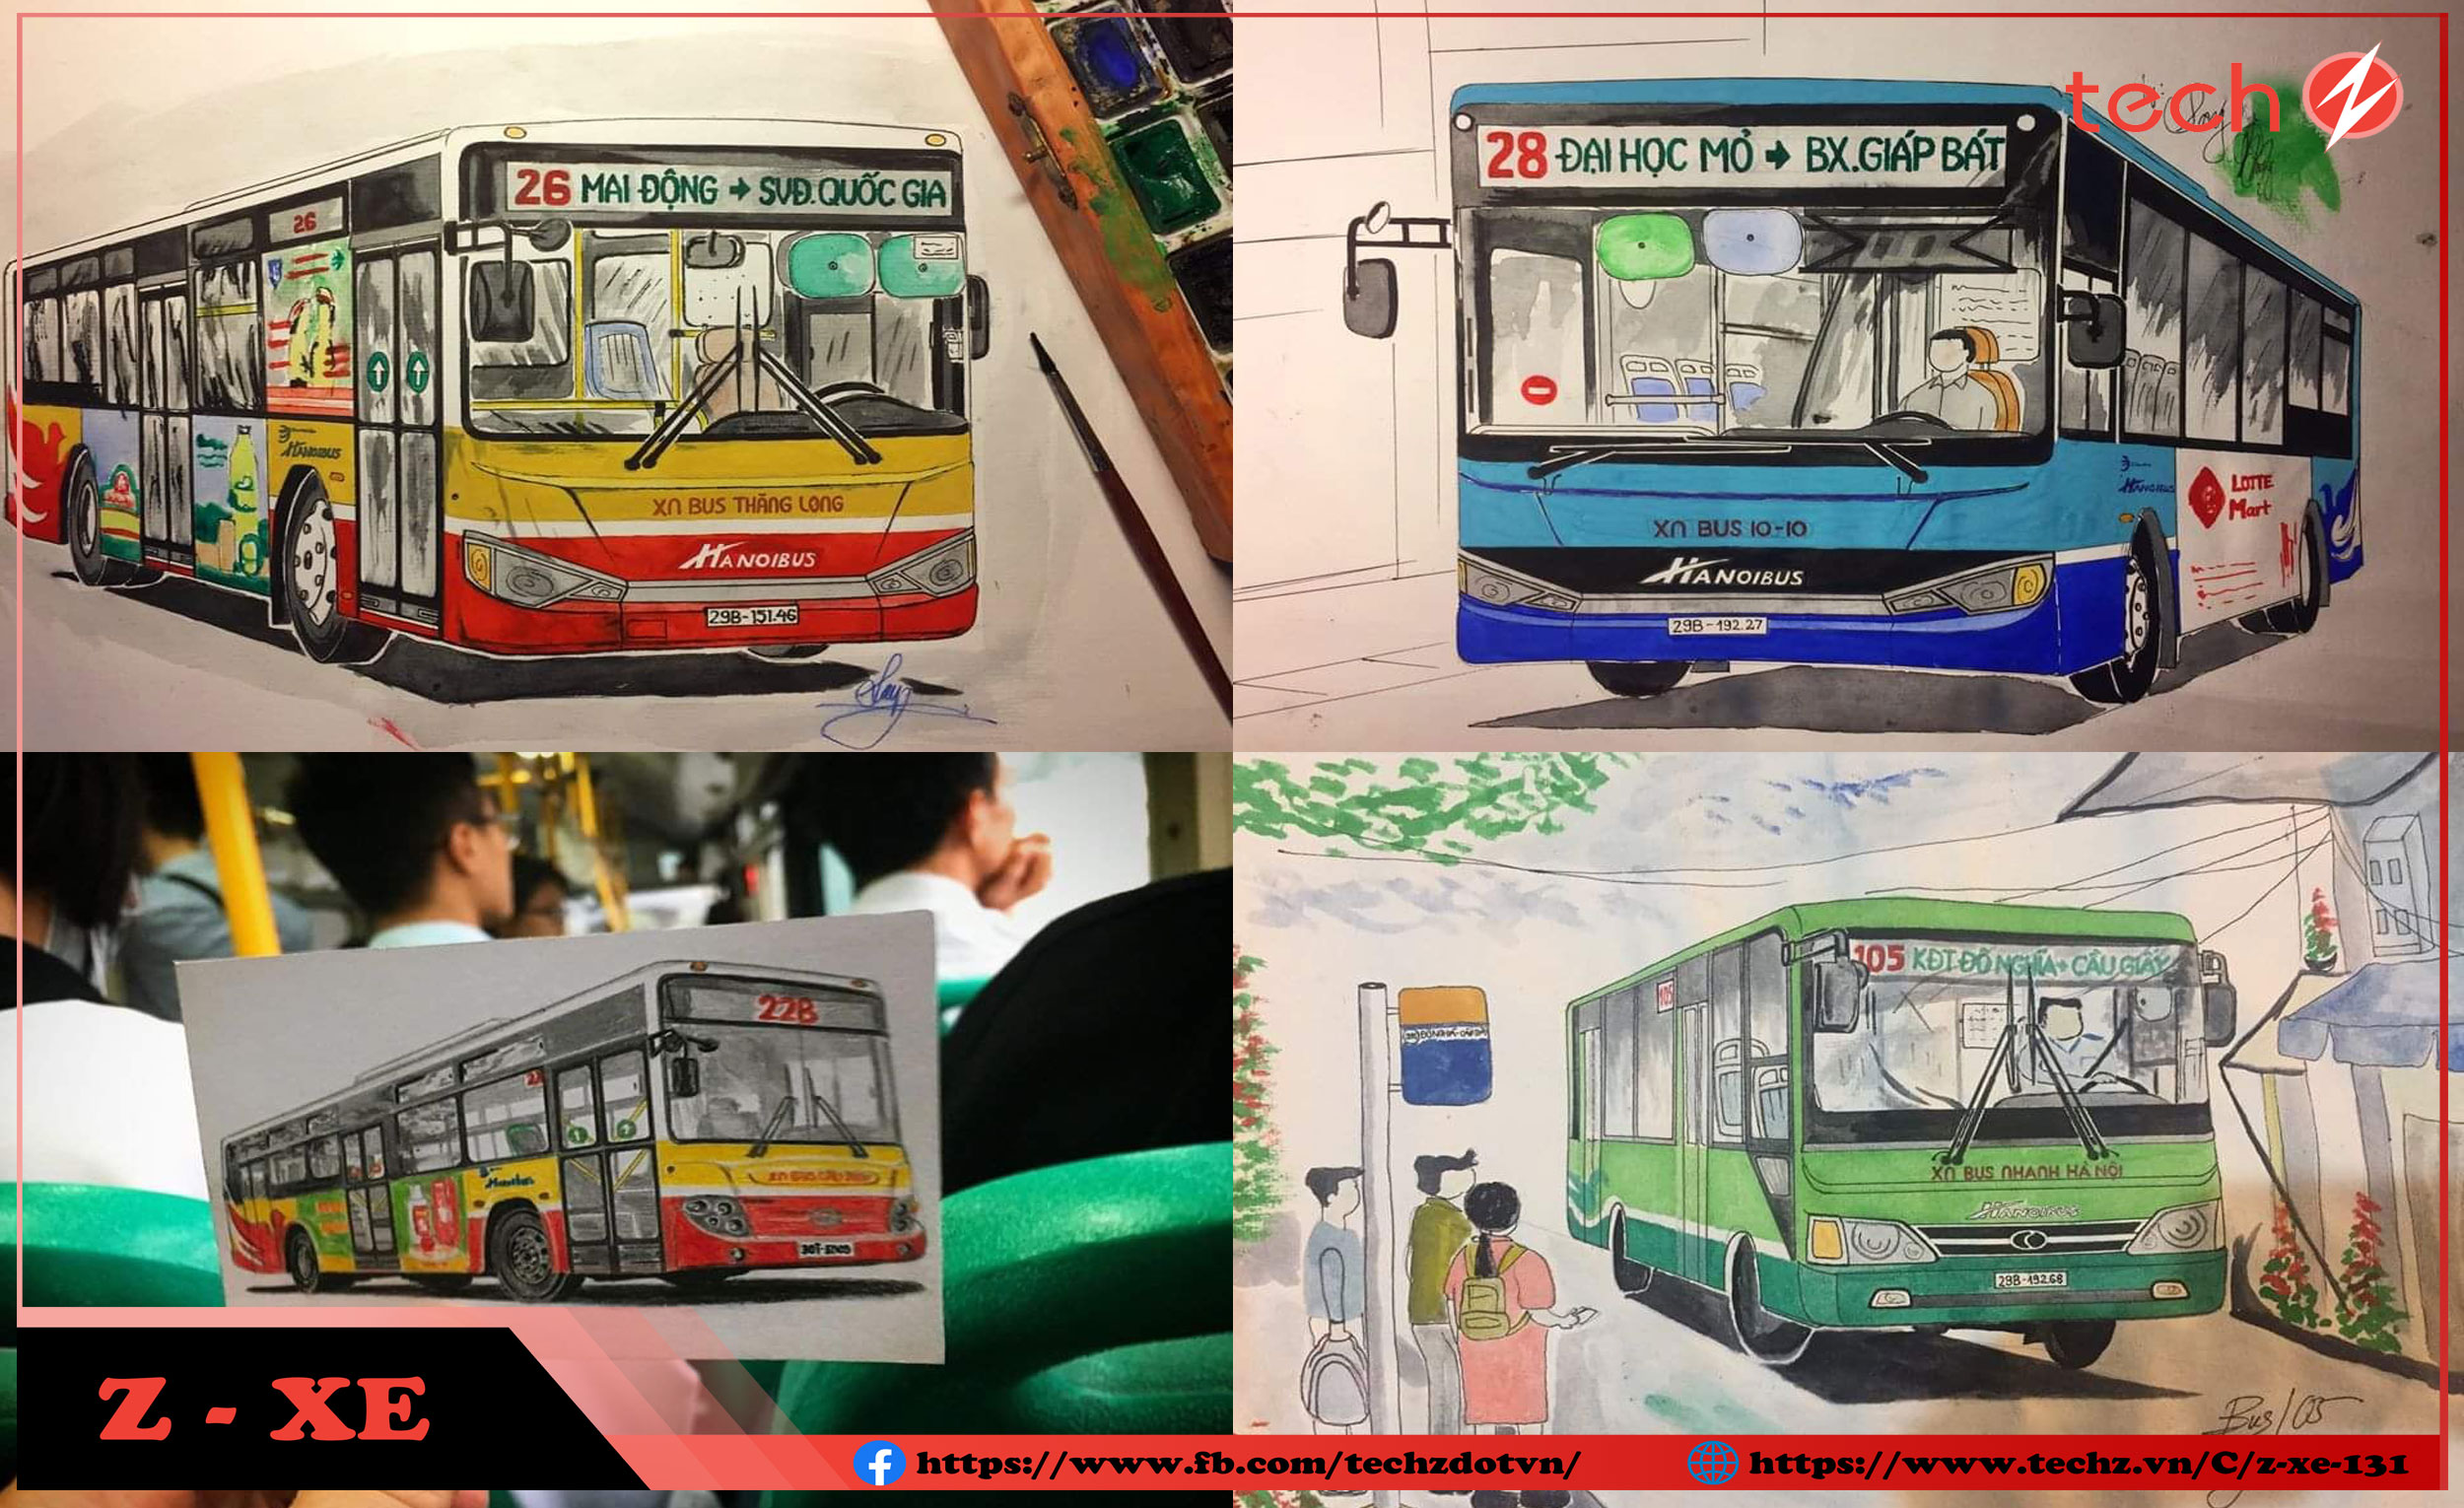 Hãy tưởng tượng mình đang trên một chuyến đi bằng xe bus đến những nơi xa xôi. Những bức tranh vẽ xe bus đầy màu sắc và sinh động sẽ giúp bạn trải nghiệm cảm giác tuyệt vời đó mà không phải bước chân tới đâu xa.